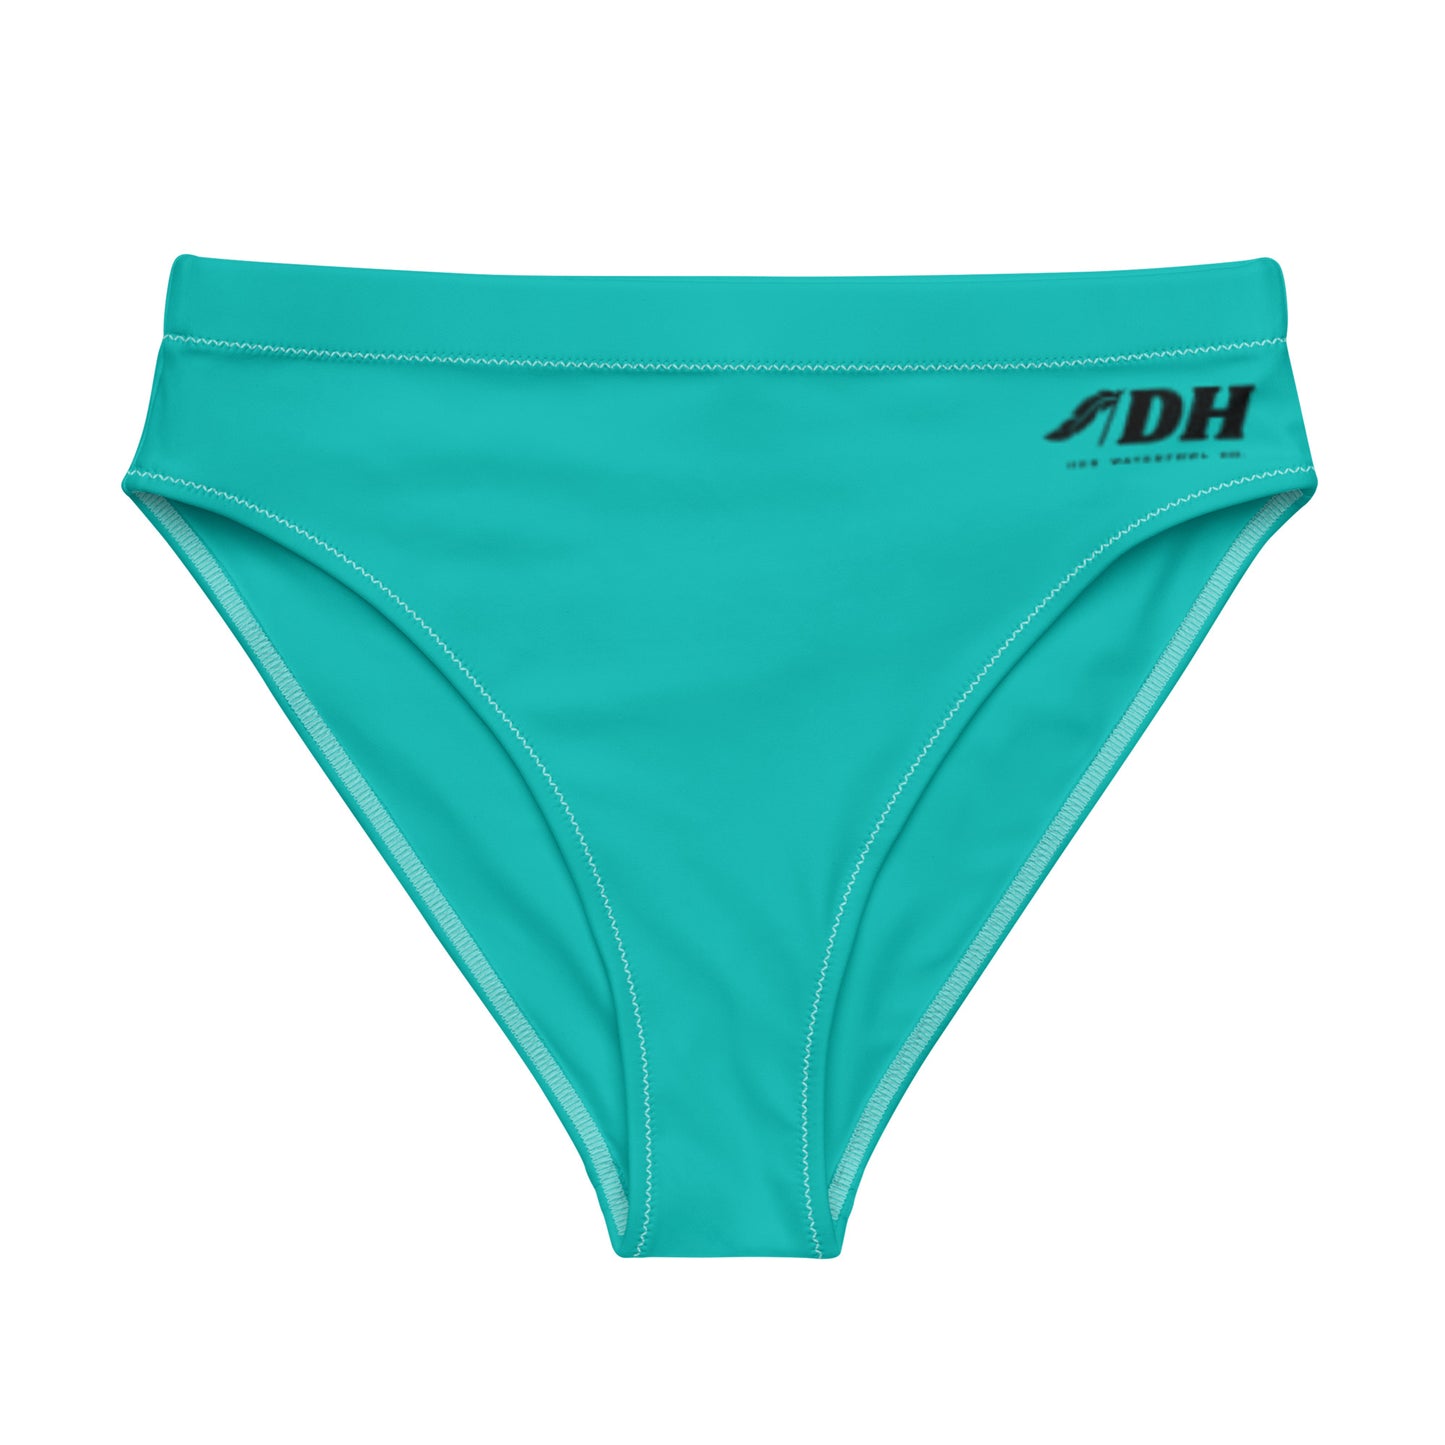 DH Bikini Bottom in Turquoise